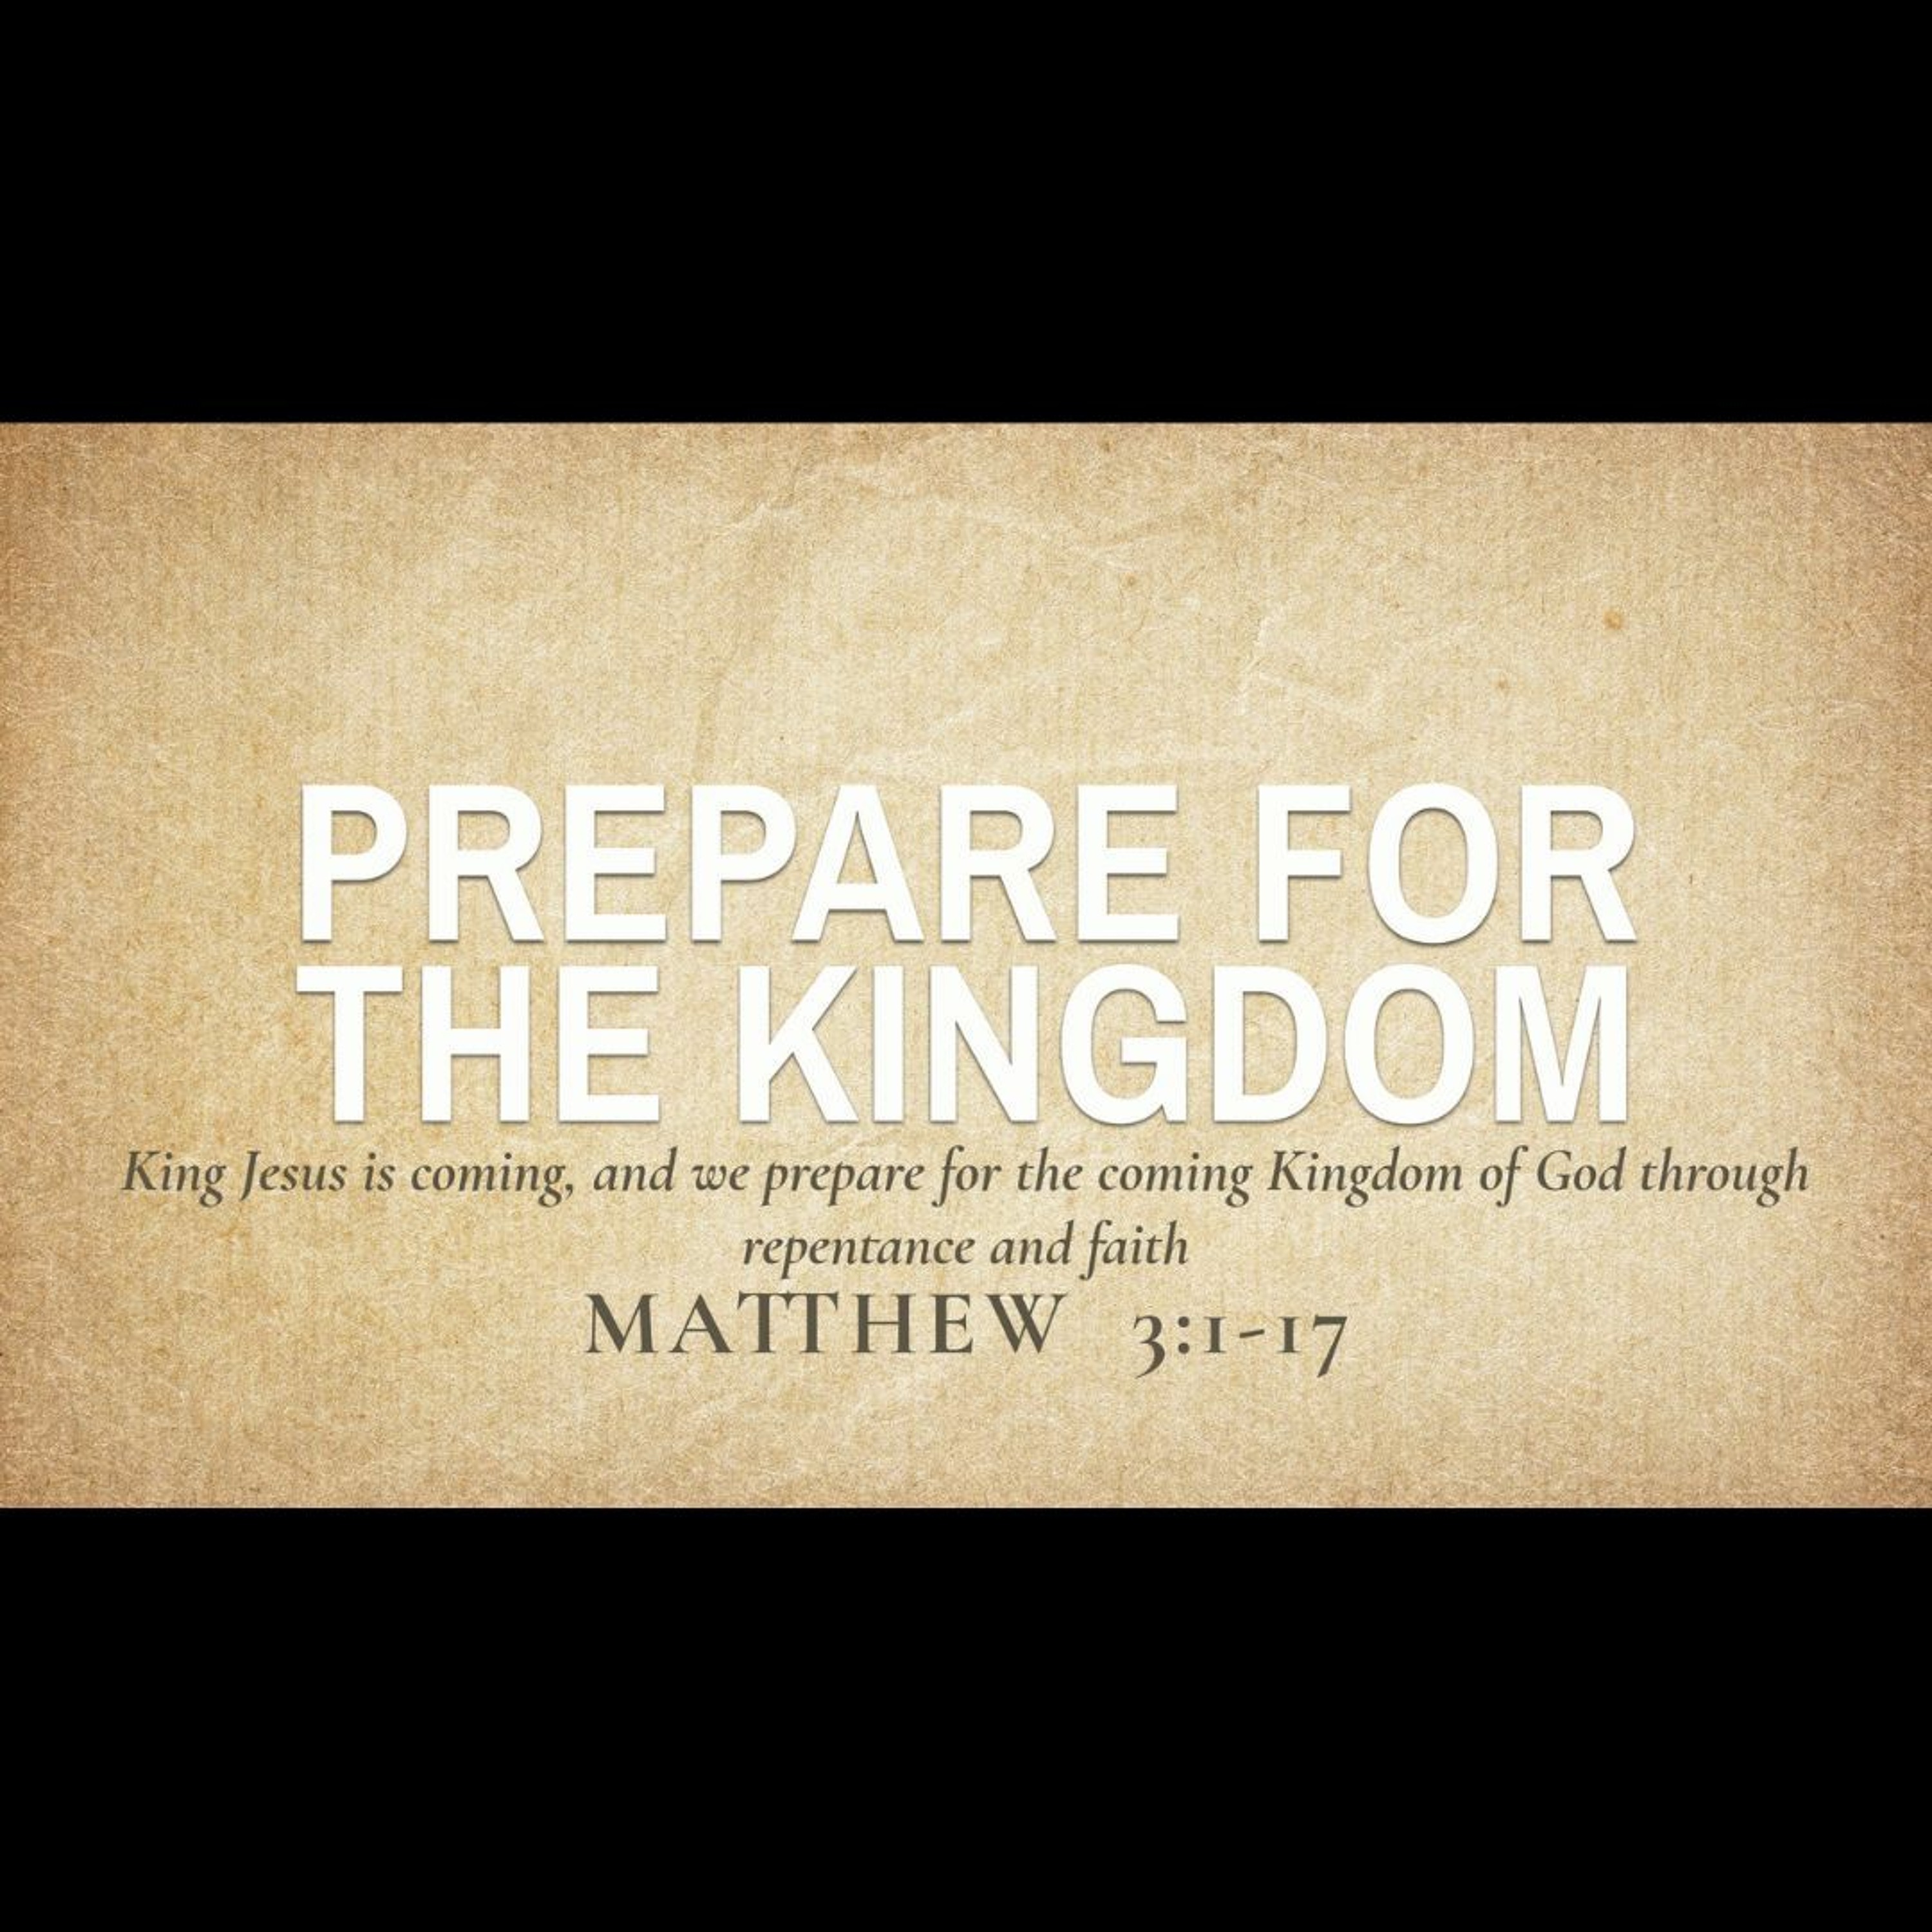 Prepare for the Kingdom (Matthew 3:1-12)